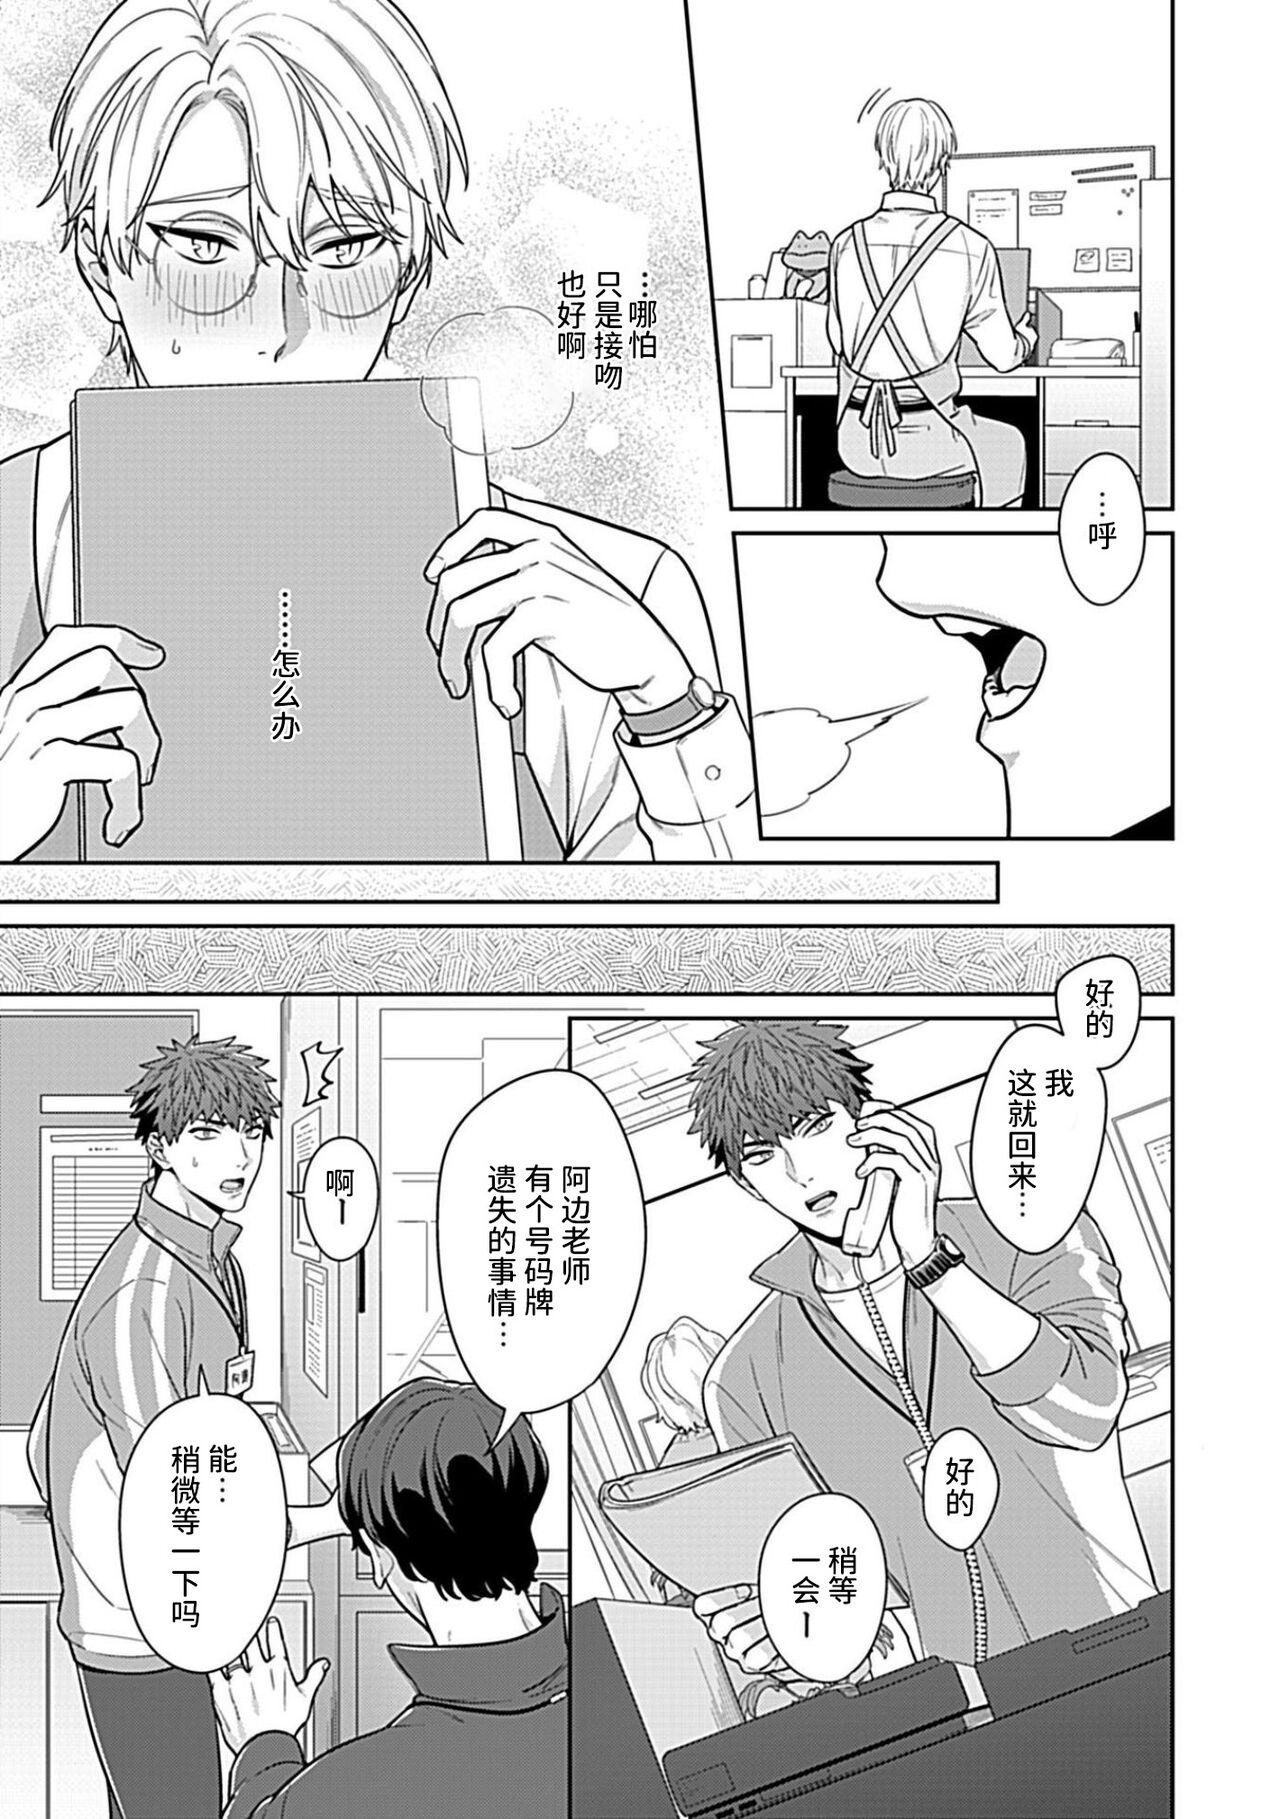 Pija Sensei, Shokuji wa Bed no Ue de 4 - Original Abg - Page 5